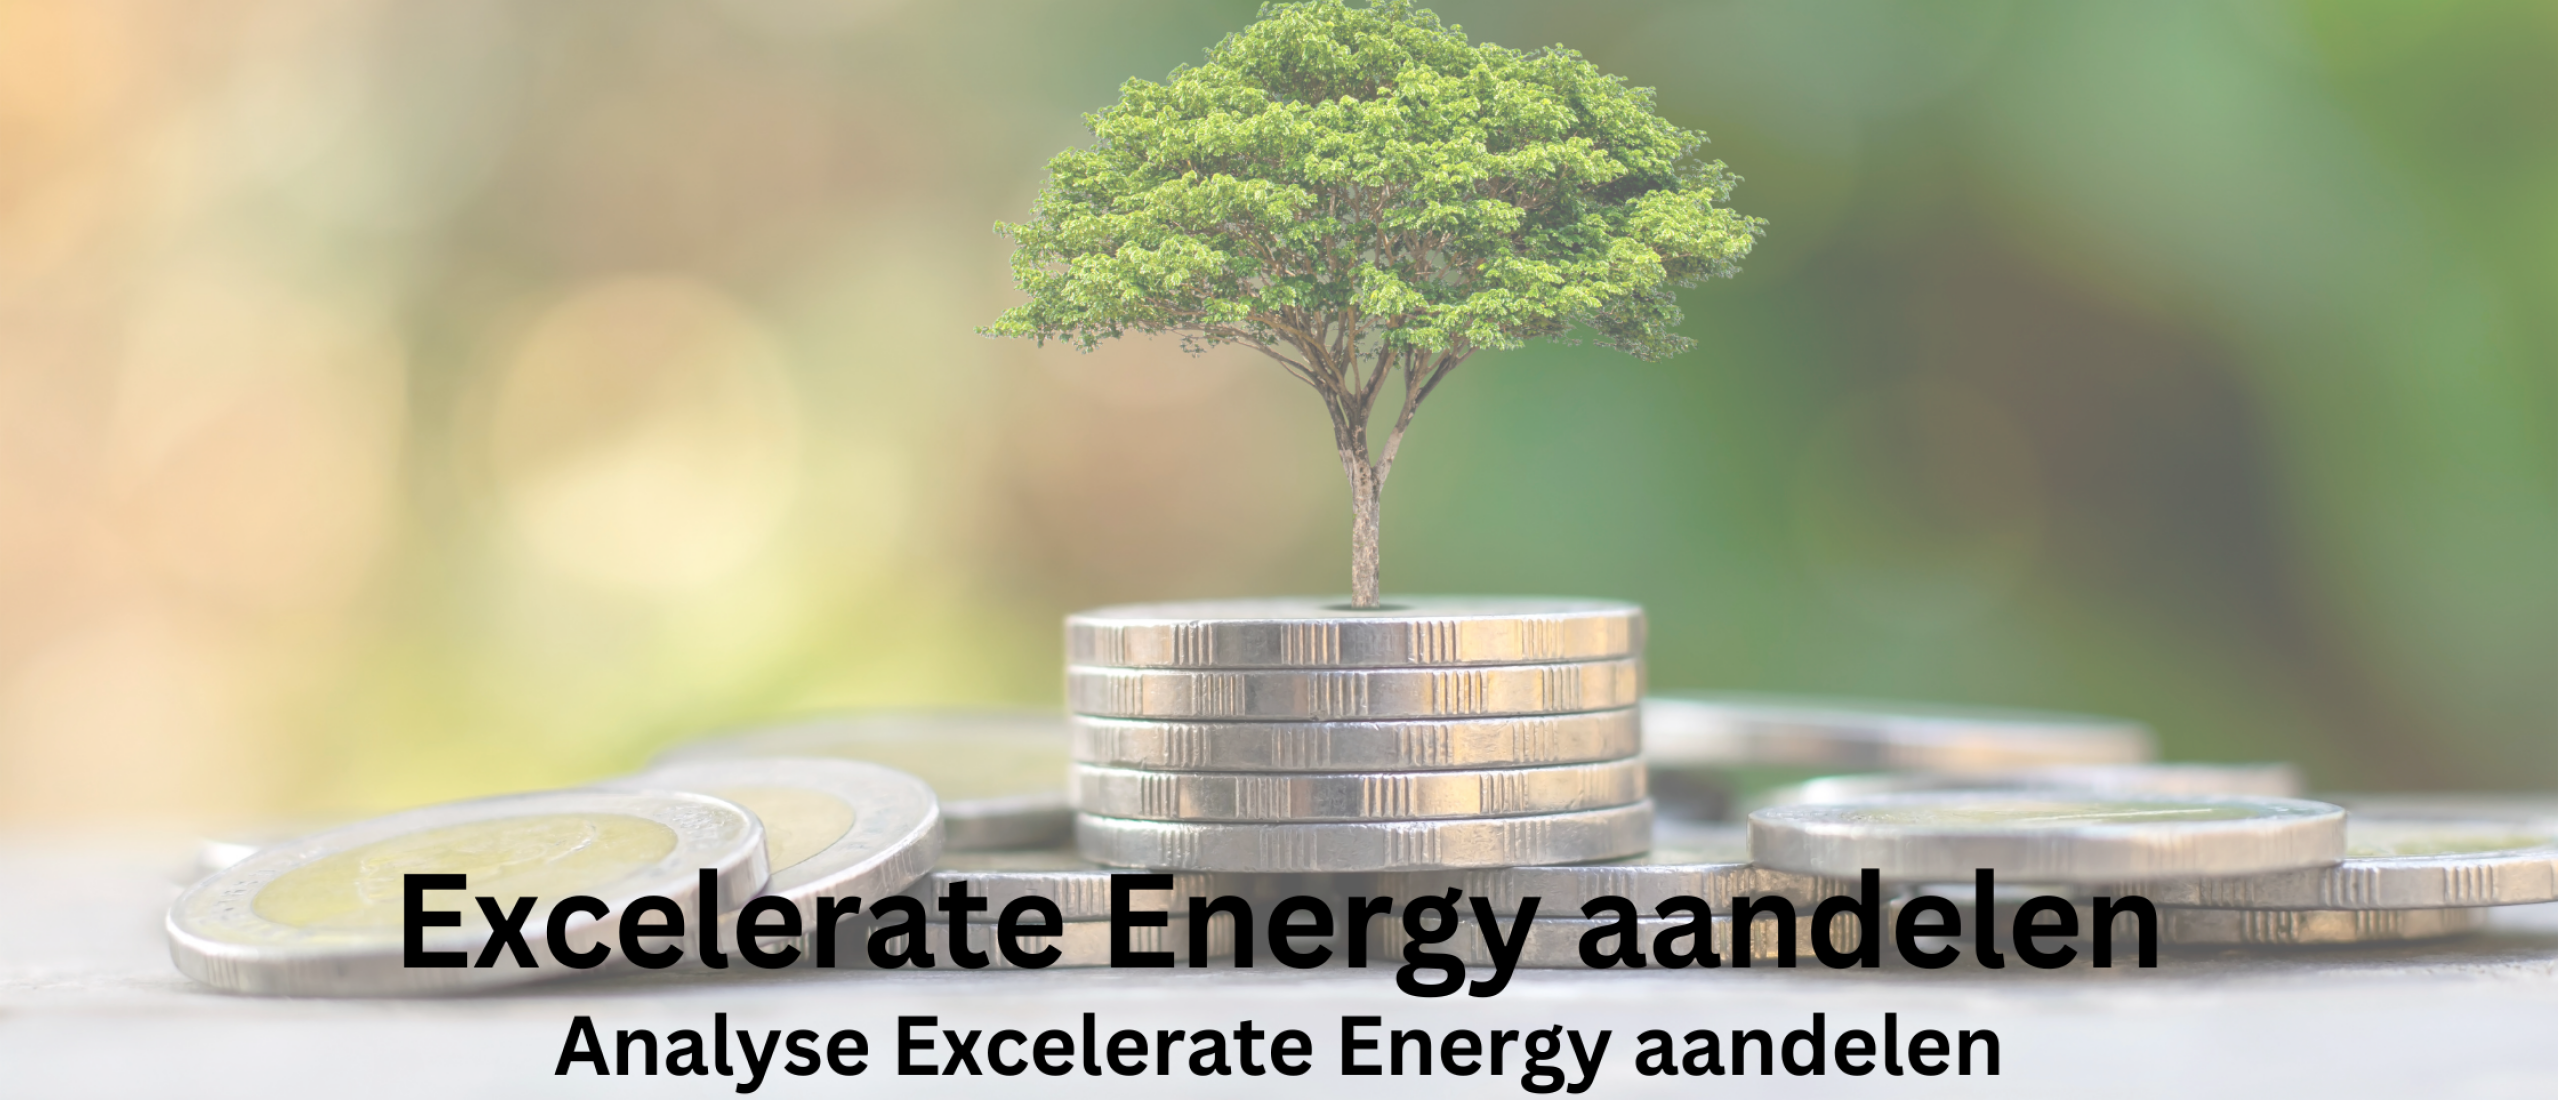 Excelerate Energy aandelen kopen? Analyse +54,3% Groei | Happy Investors